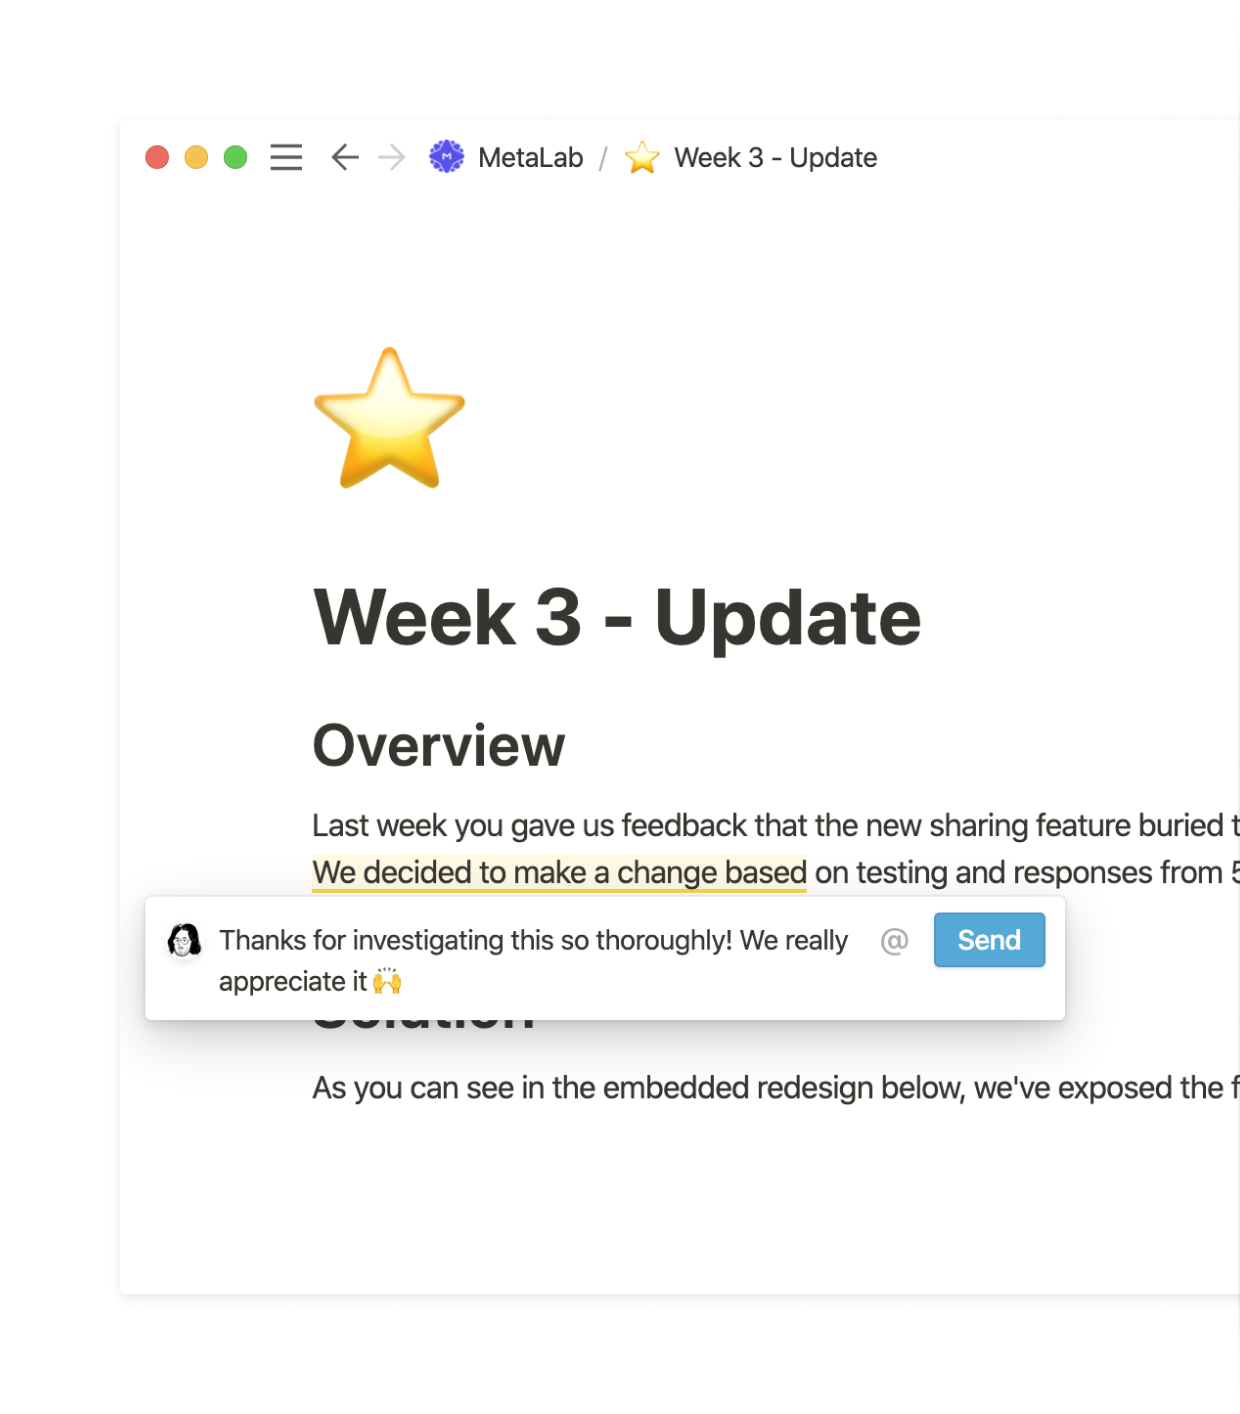 MetaLab Weekly Update